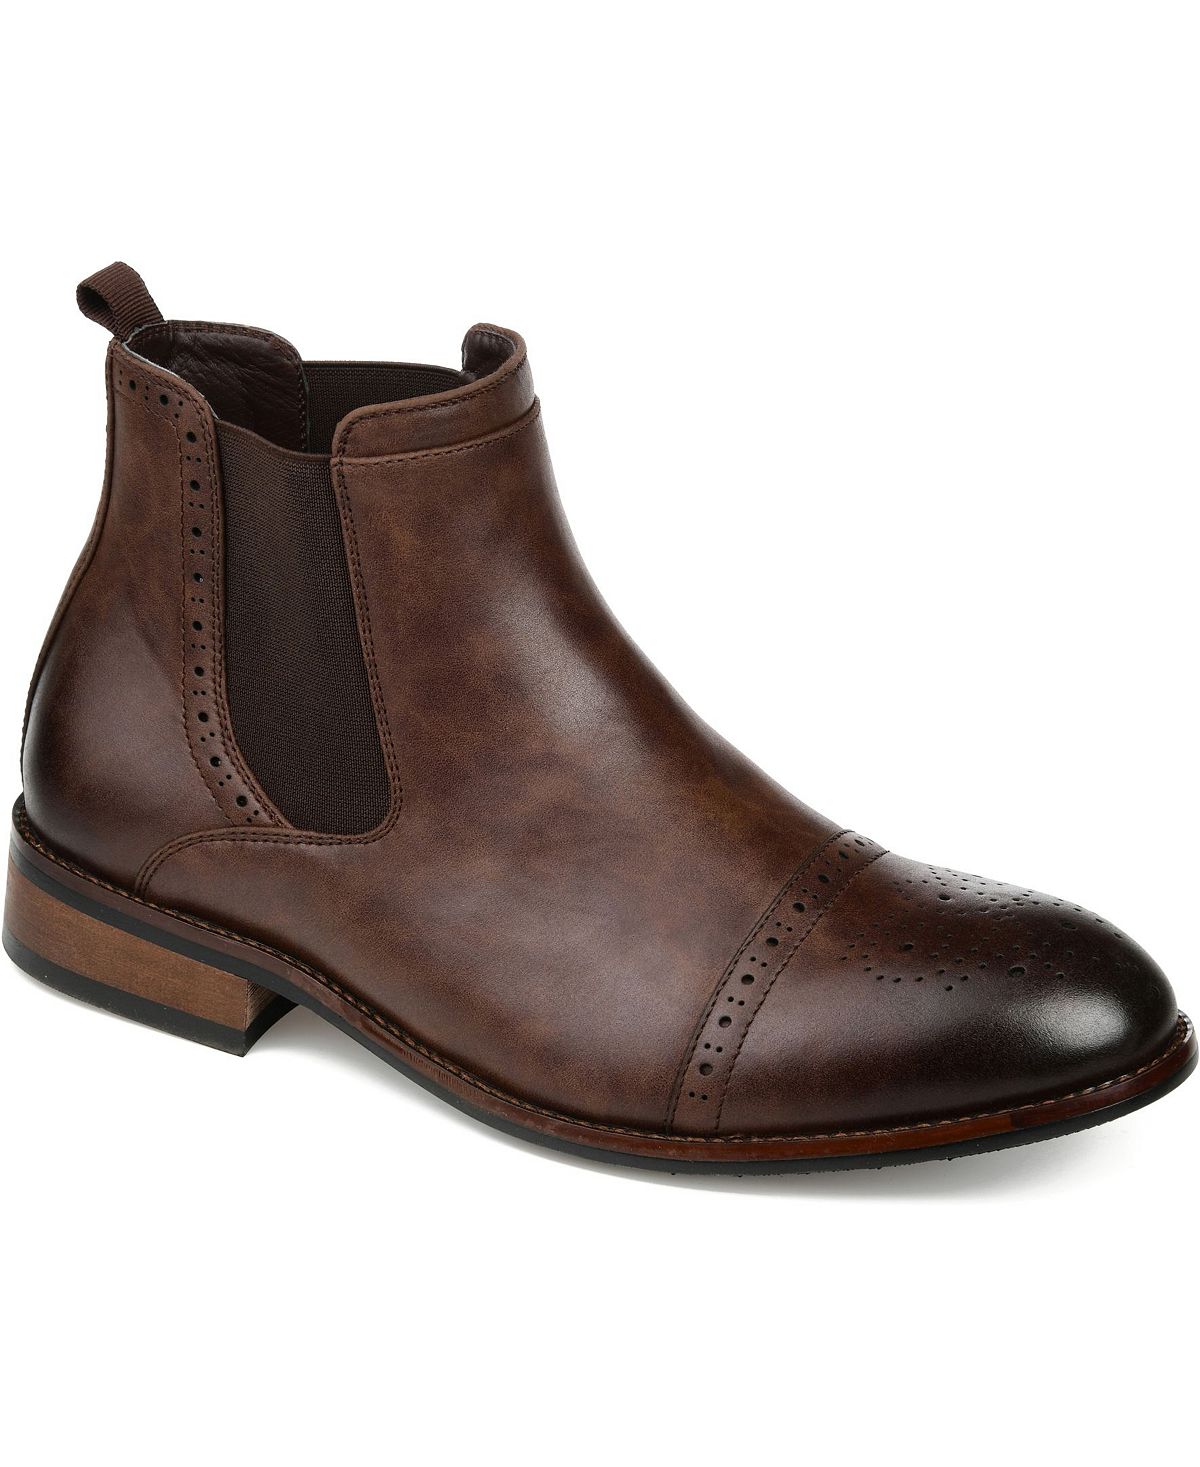 Мужские ботинки челси garrett cap toe Vance Co., коричневый цена и фото